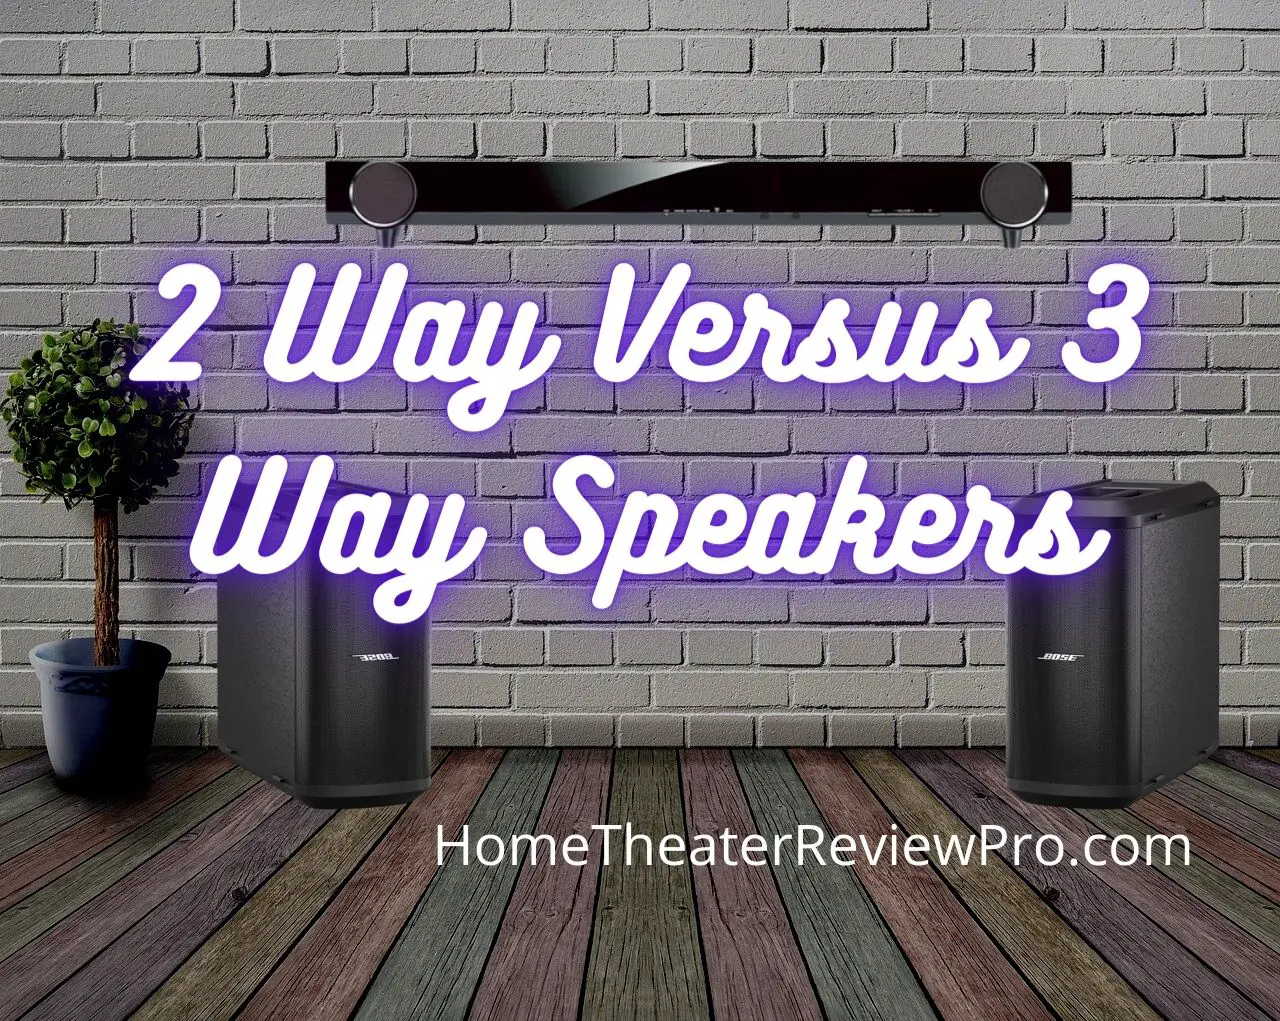 2 Way Versus 3 Way Speakers